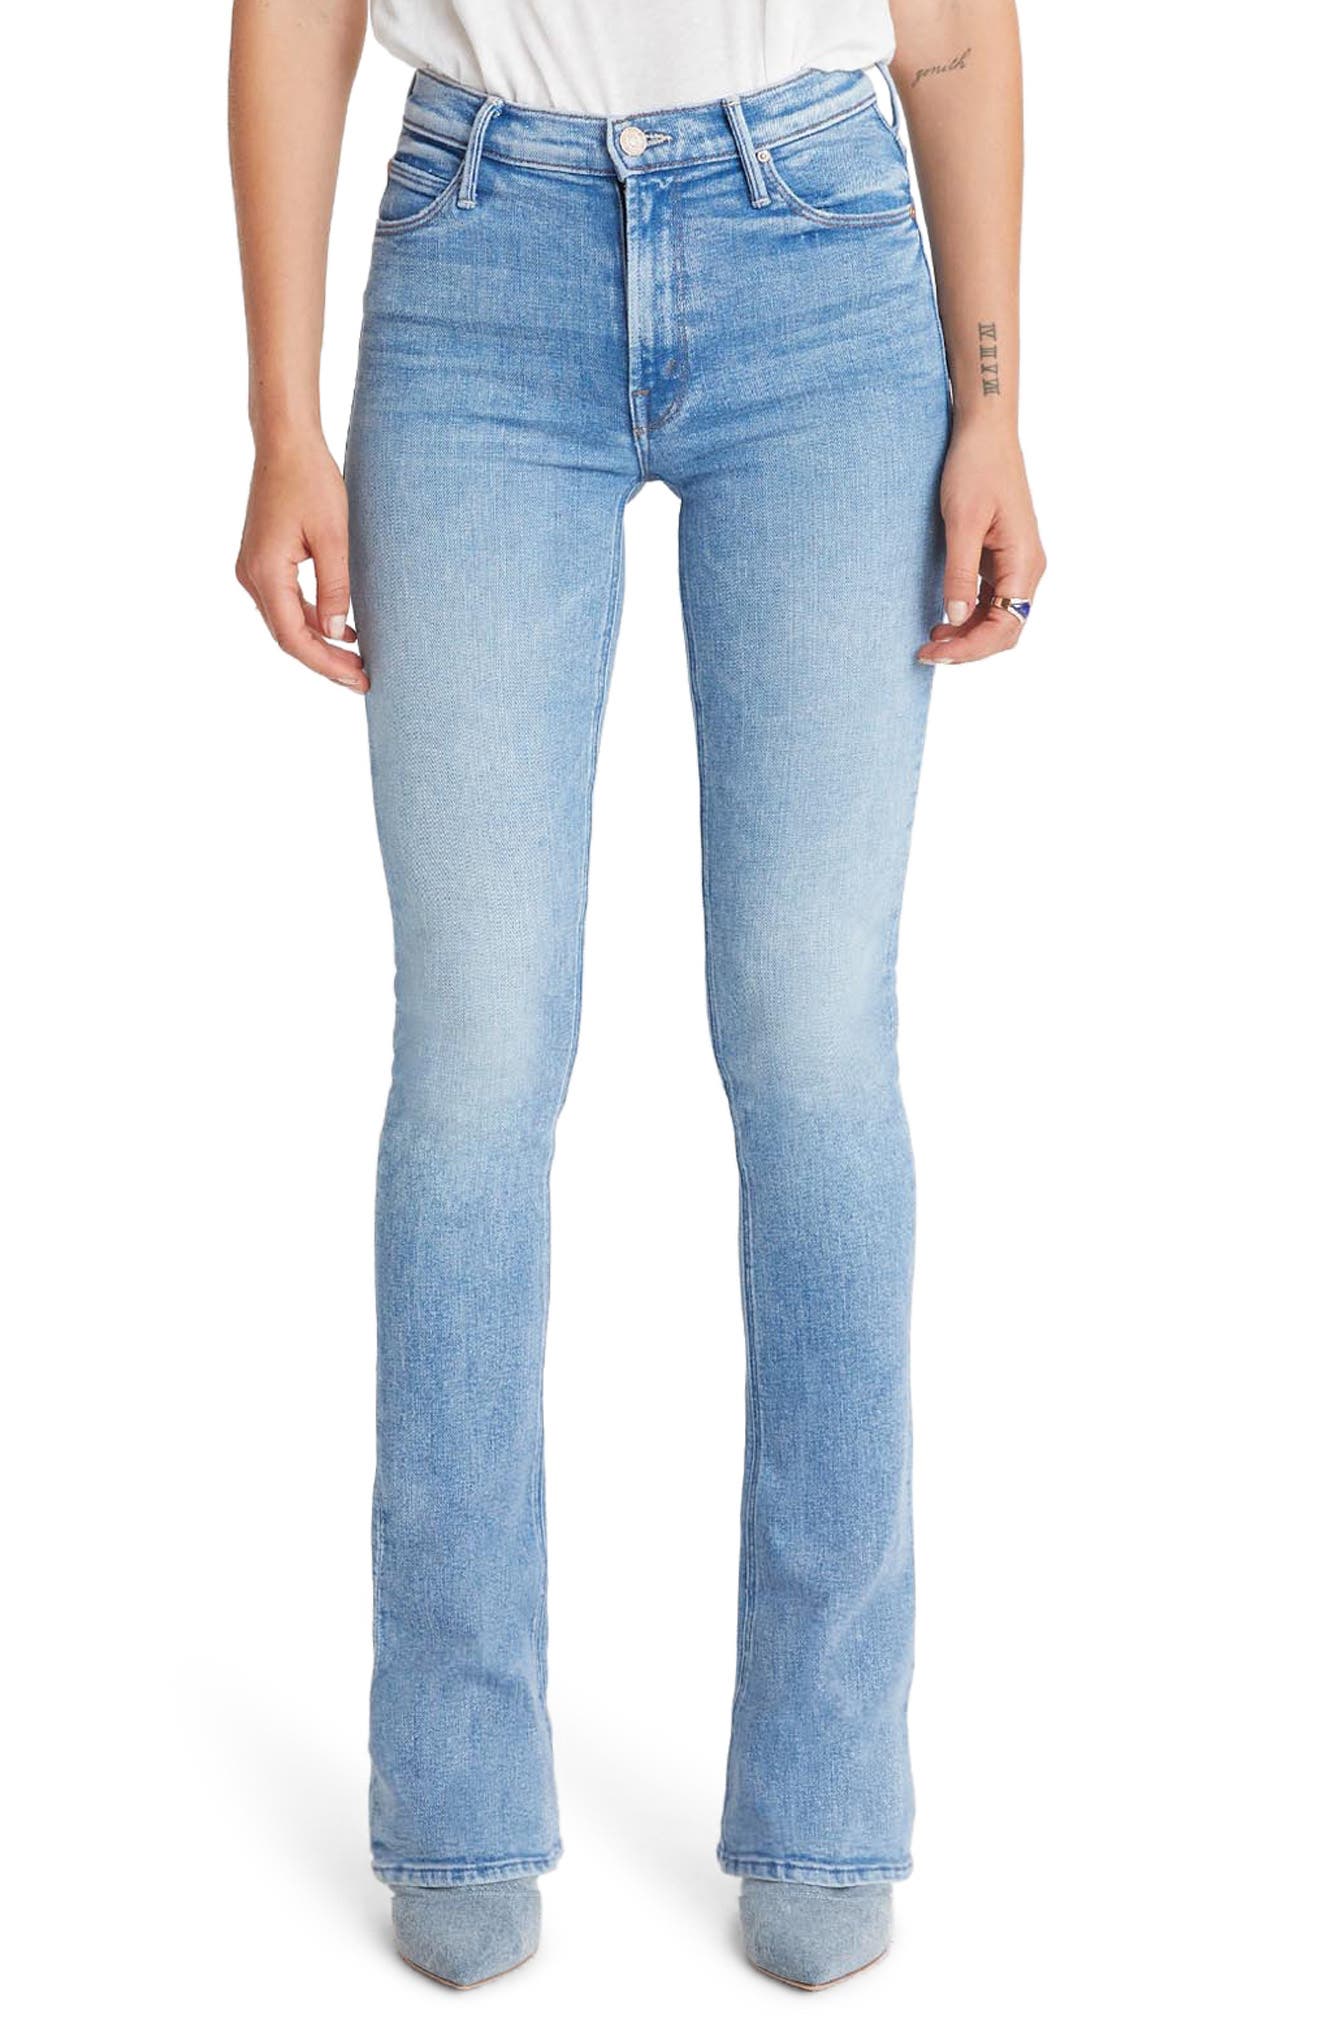 plus size jeans under $20